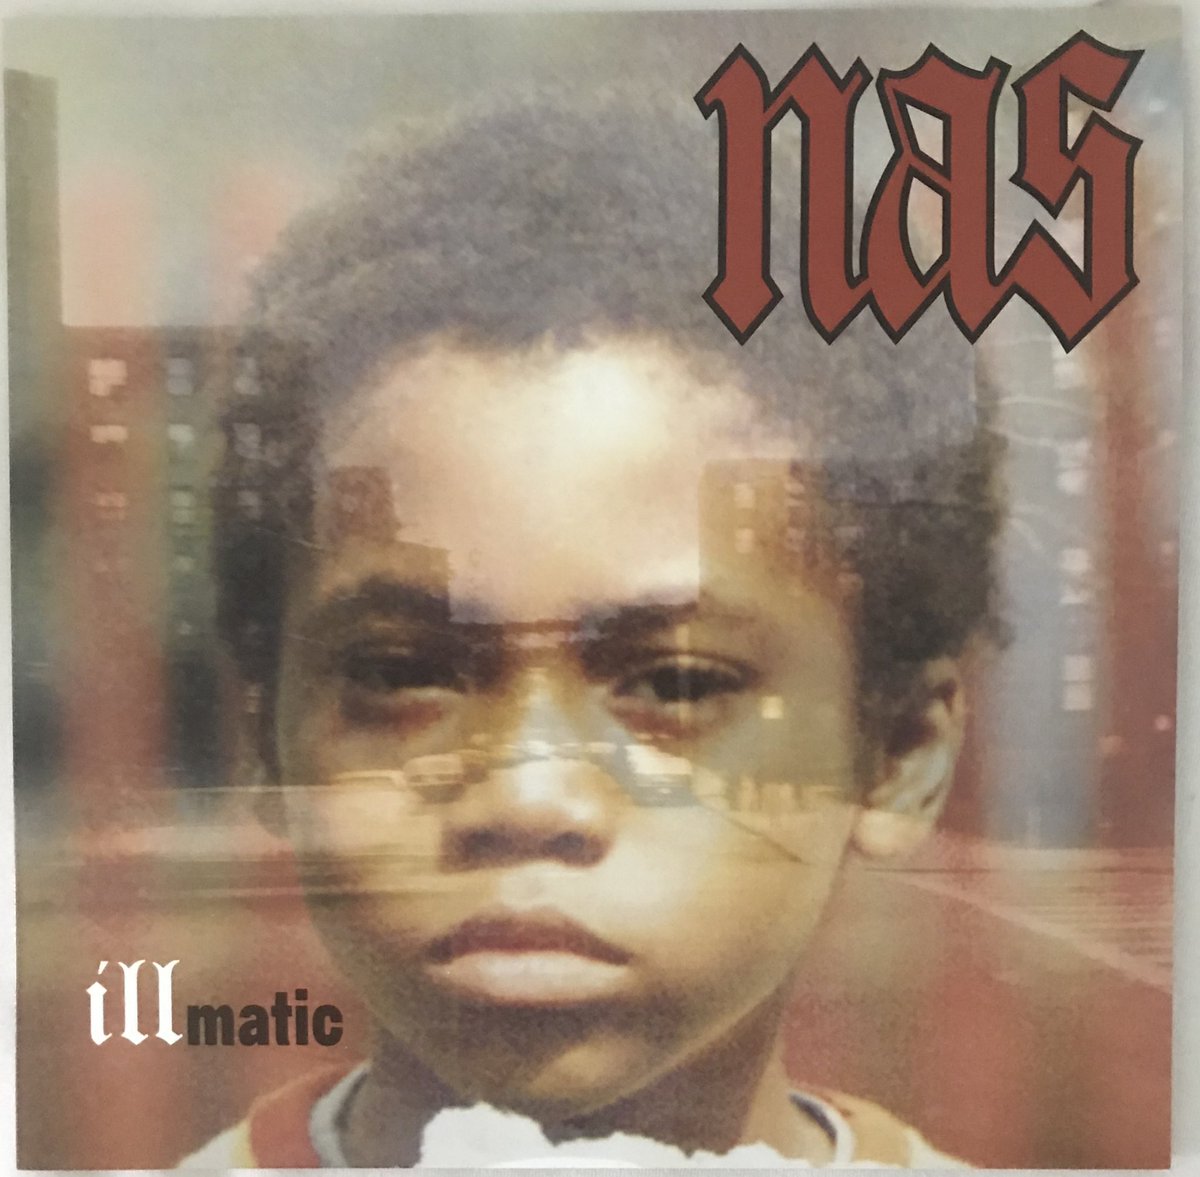 Nas - IllmaticIncludes:Illmatic (LP)Rating: 10/10